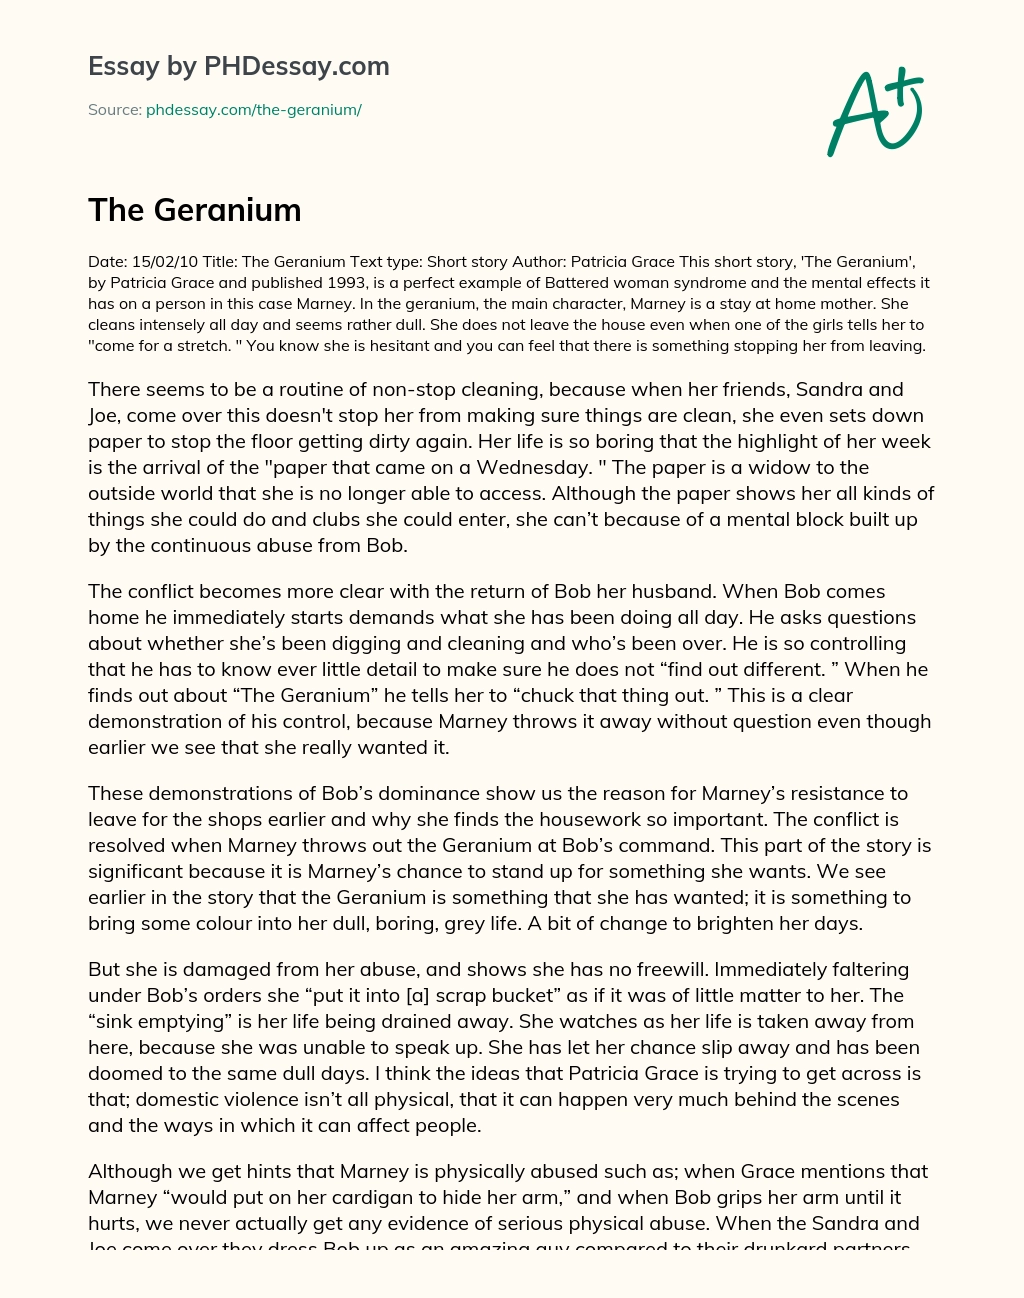 The Geranium essay